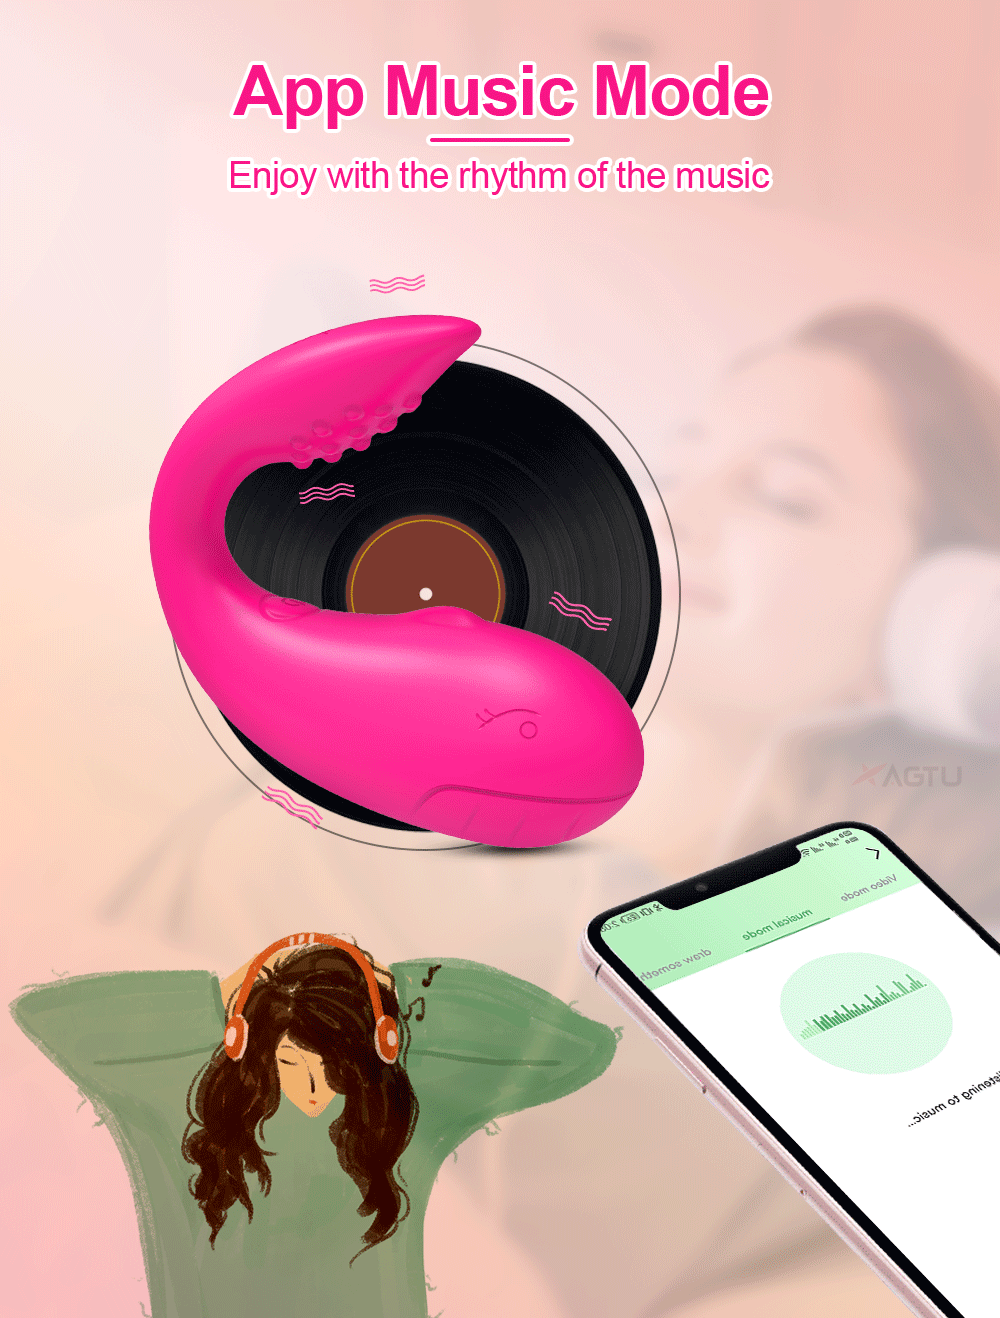  Kho sỉ Trứng rung cá heo Love Spouse kết nối bluetooth điều khiển qua app TD042 hàng xách tay